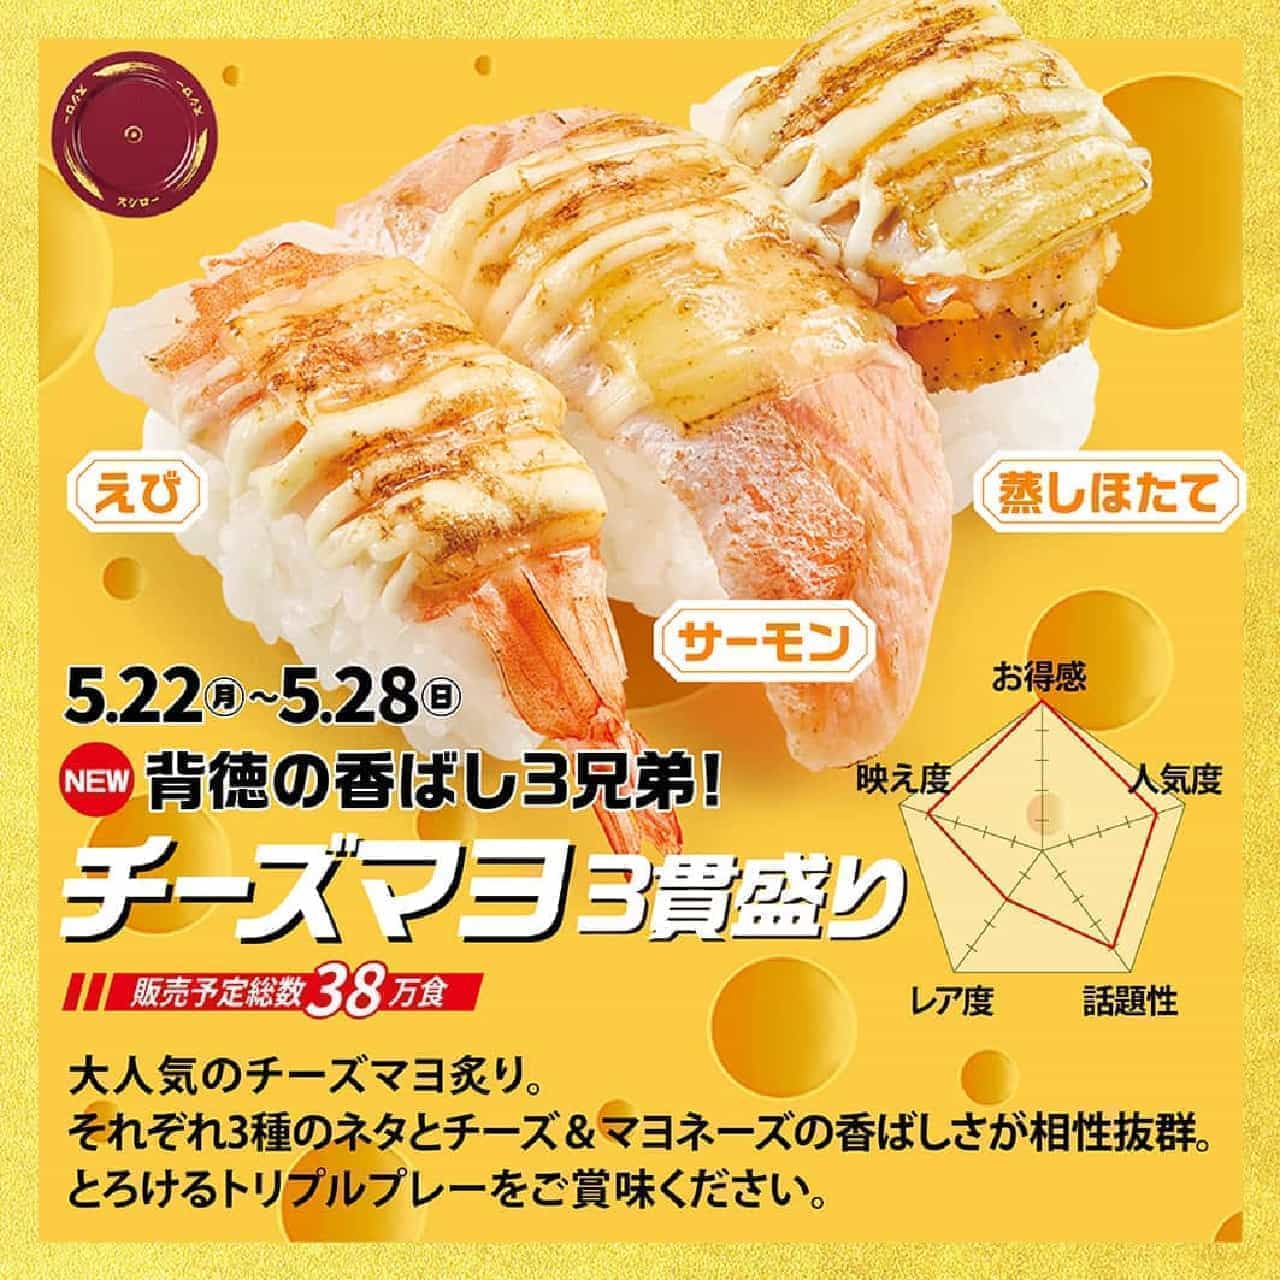 Sushiro "Cheese Mayo 3-piece Platter